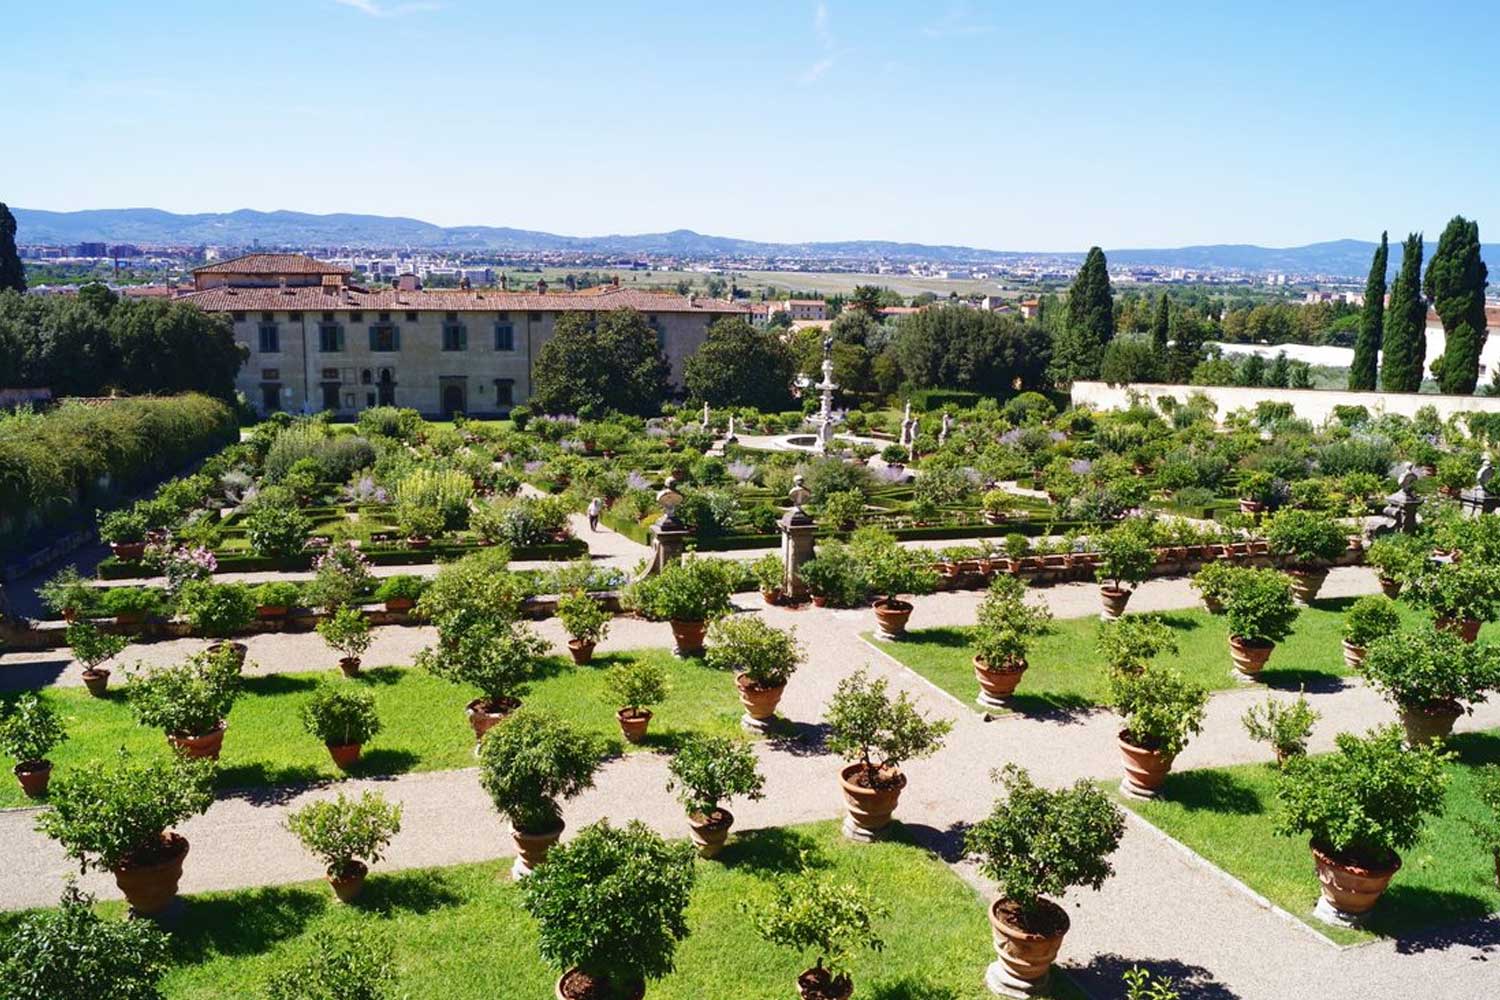 Giardino all'italiana, con piante di limoni, della Villa Reale di Castello, Firenze